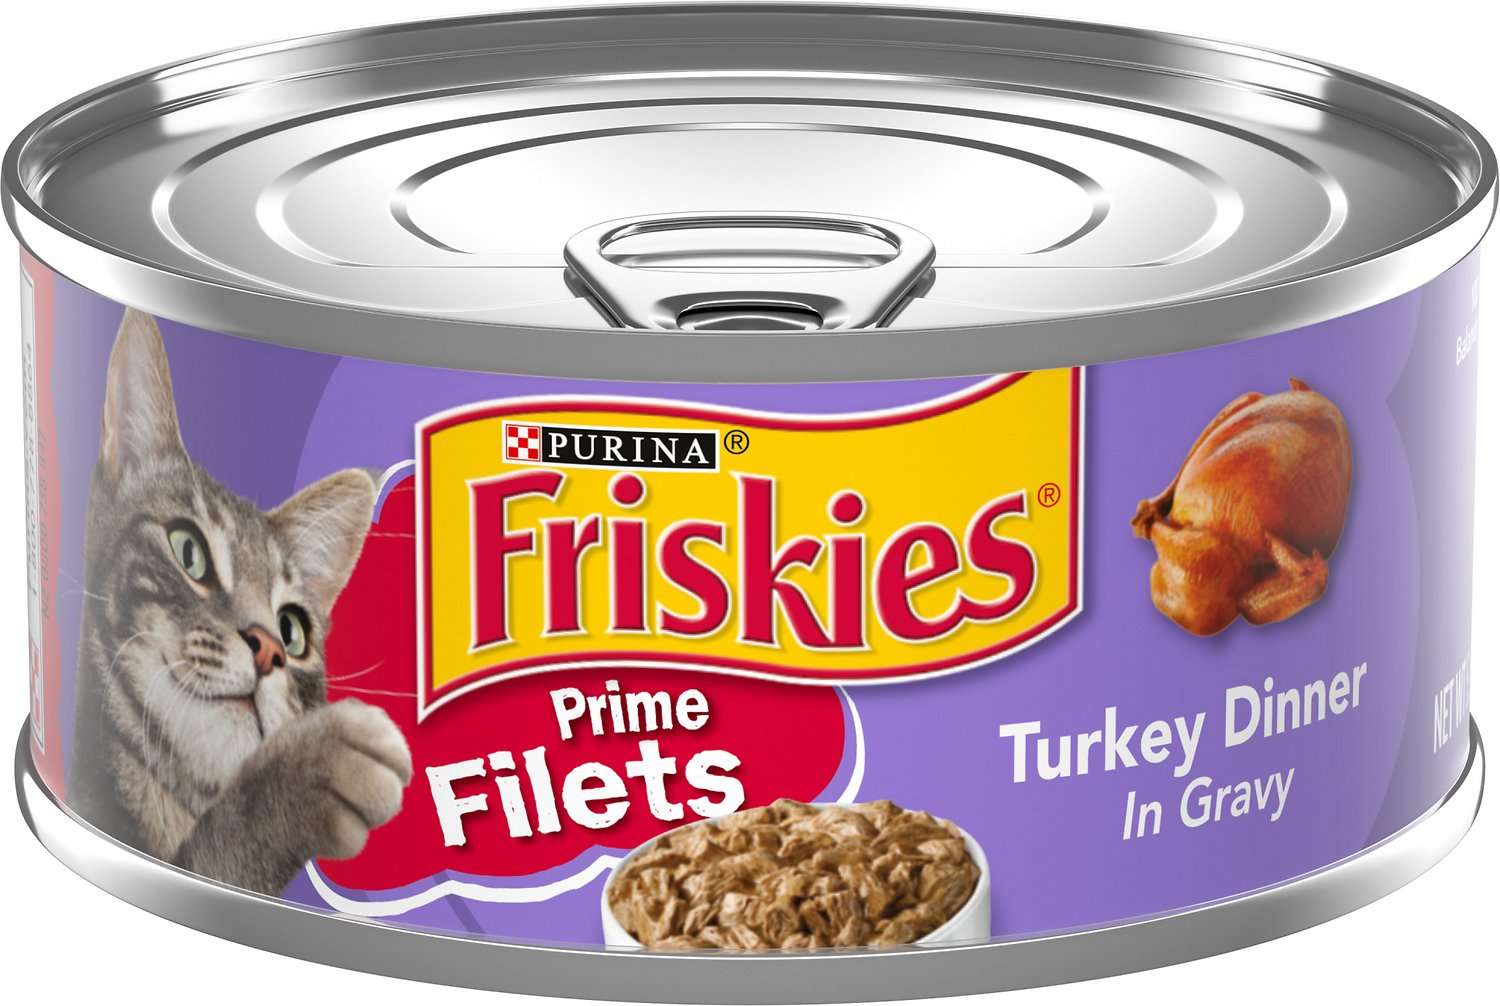 Friskies Prime Filets Turkey Dinner in Gravy Canned Cat ...